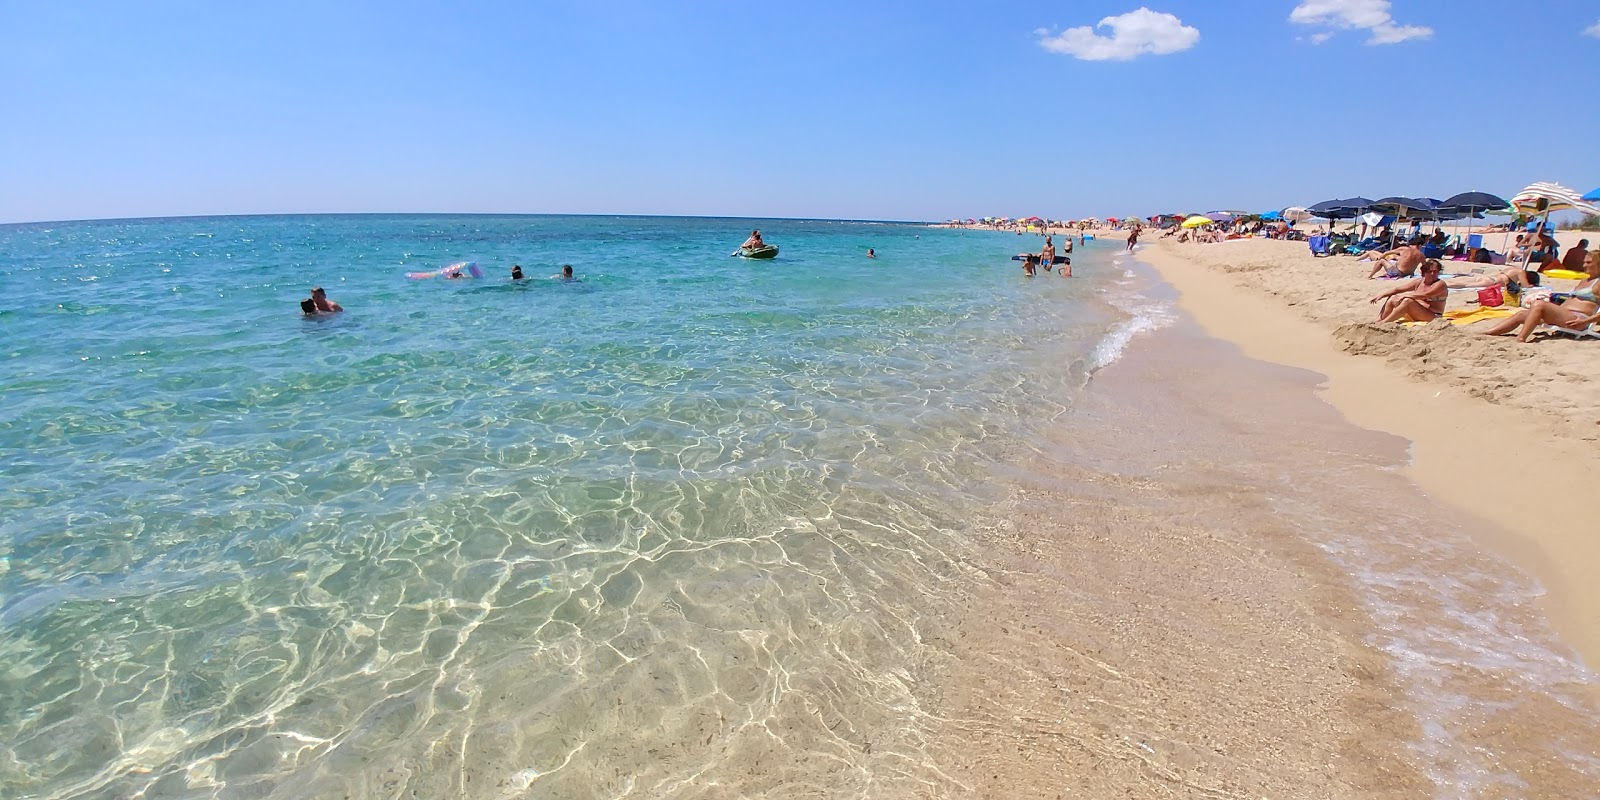 Spiaggia di Borraco'in fotoğrafı parlak kum yüzey ile